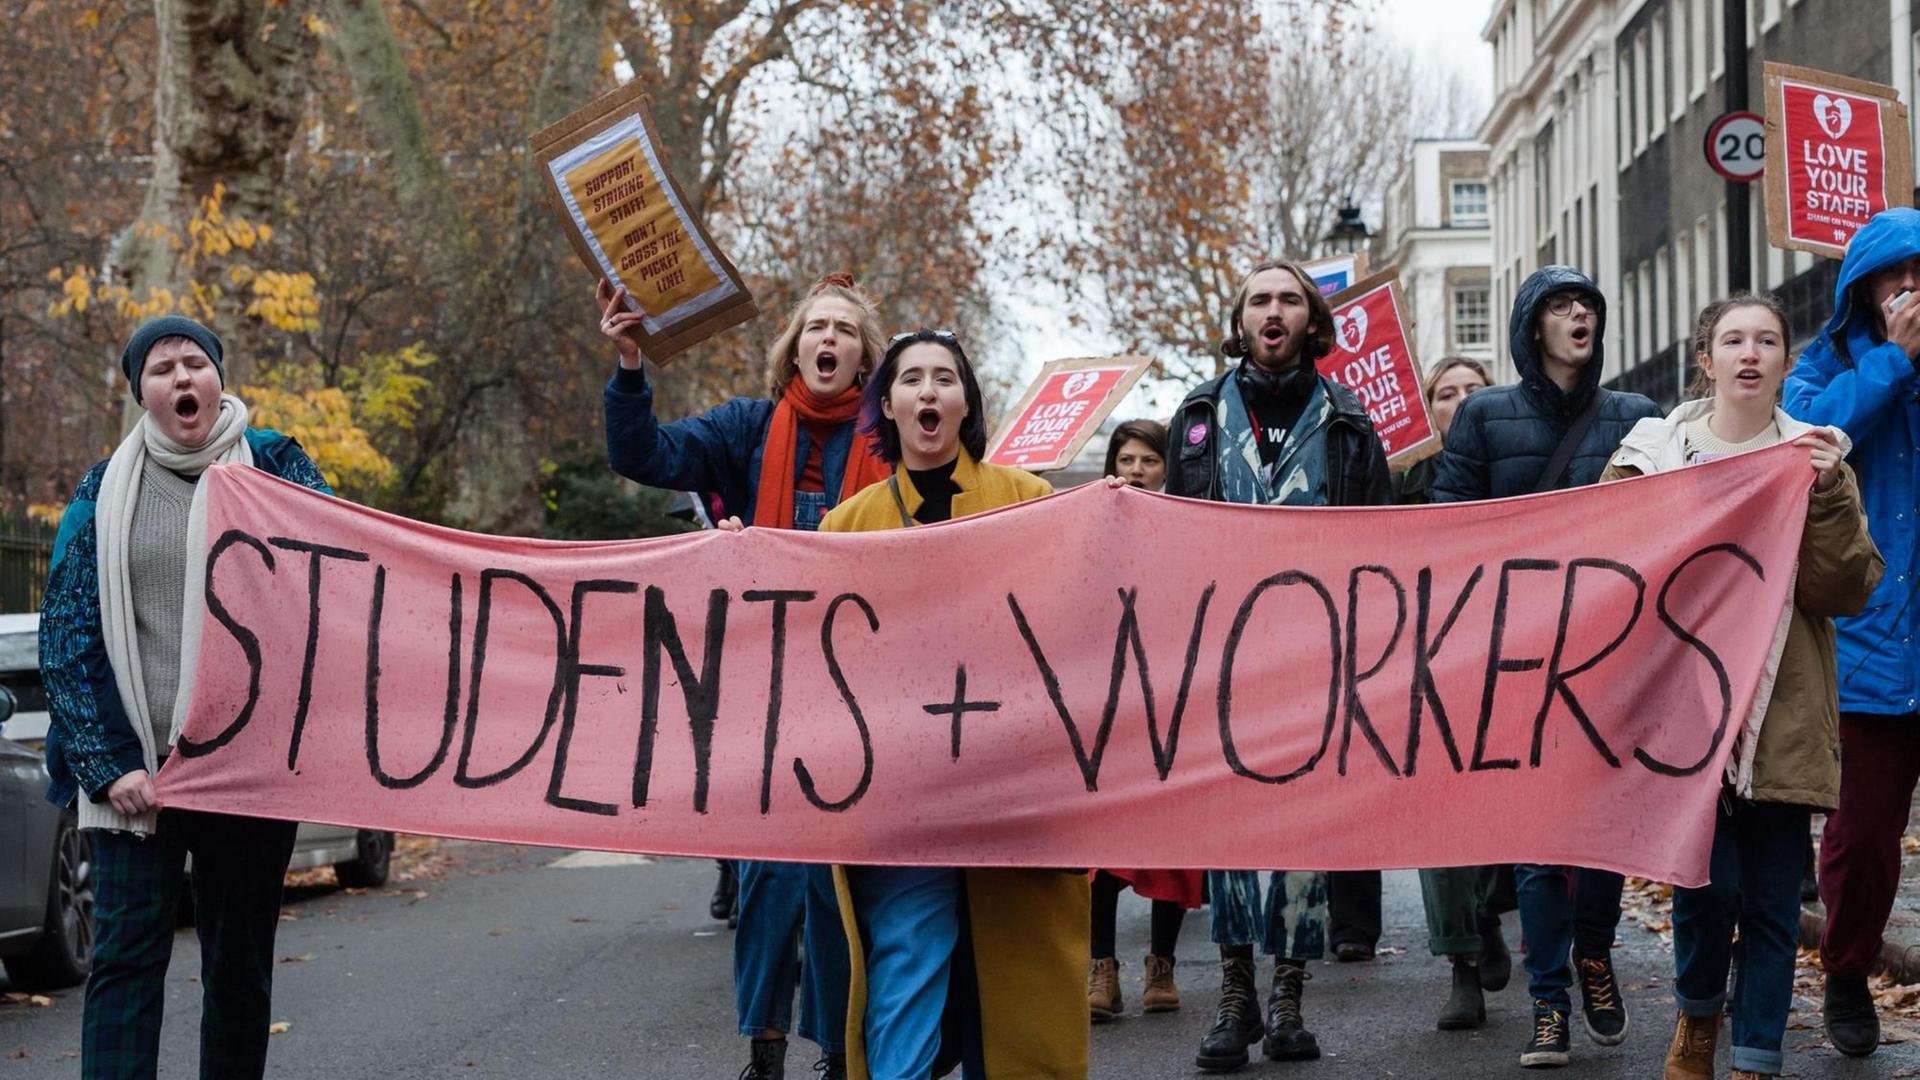 Hochschulmitarbeiter und Studenten laufen am 27. November 2019 mit Bannern an Gebäuden des University College London vorbei. Sie streiken für gerechte Arbeitsbedingungen für Hochschulmitarbeiterinnen und - mitarbeiter.